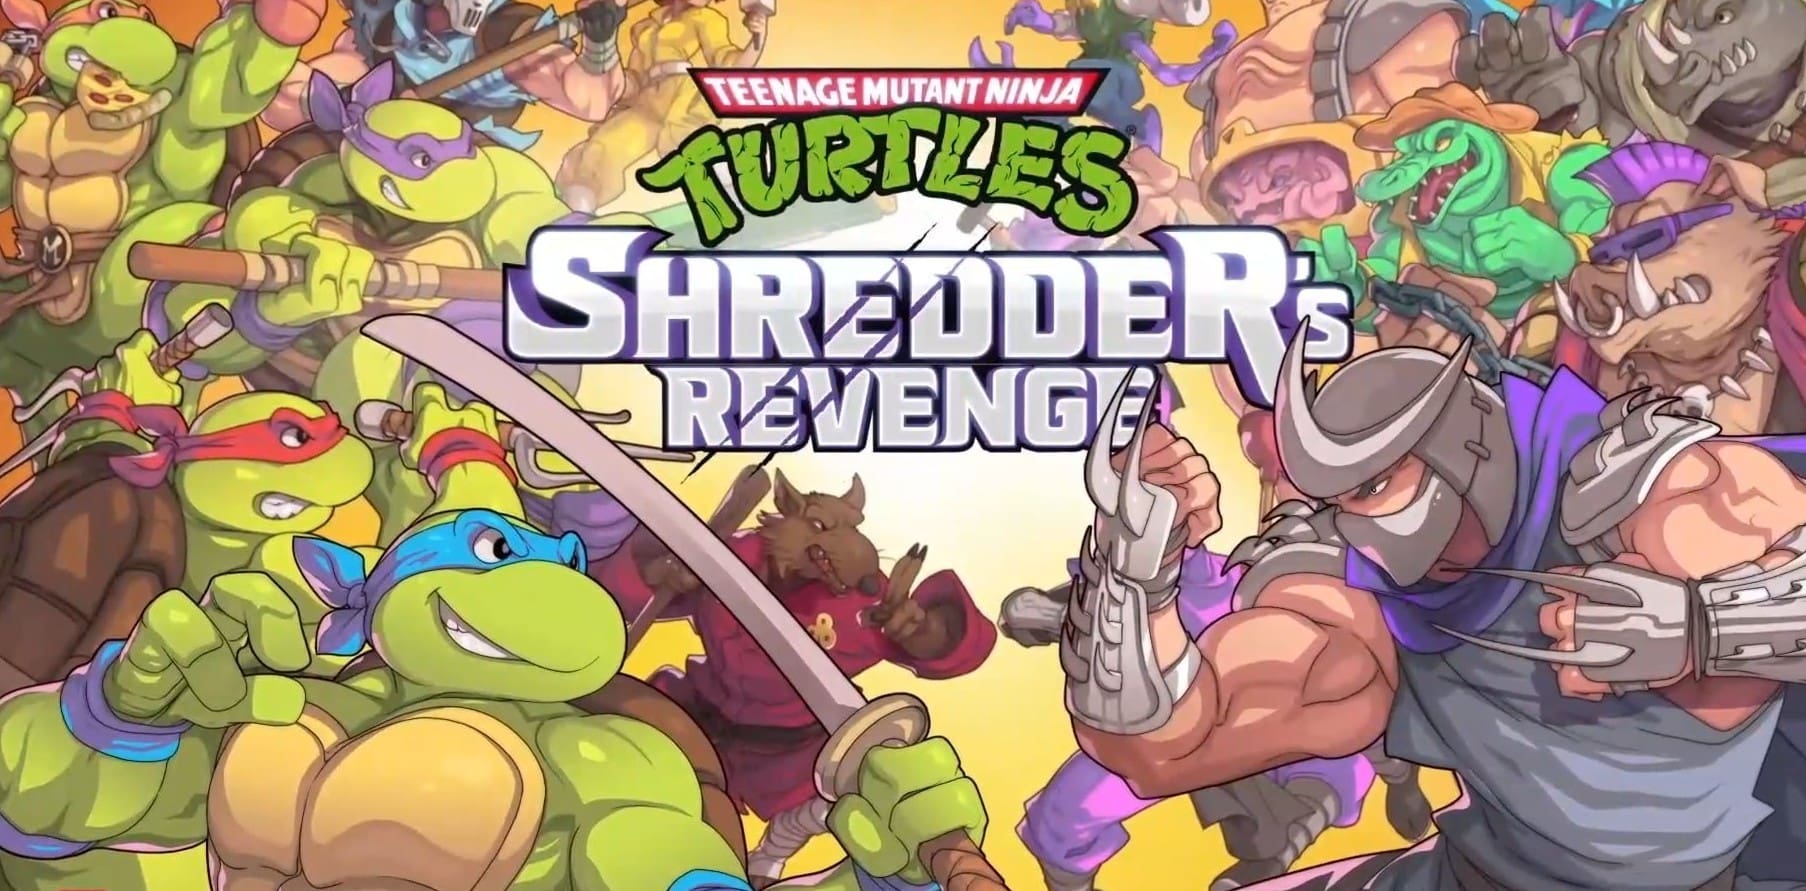 الإعلان عن نسخة متاجر جديدة للعبة TMNT: Shredder's Revenge مع المحتوى الإضافي Dimension Shellshock